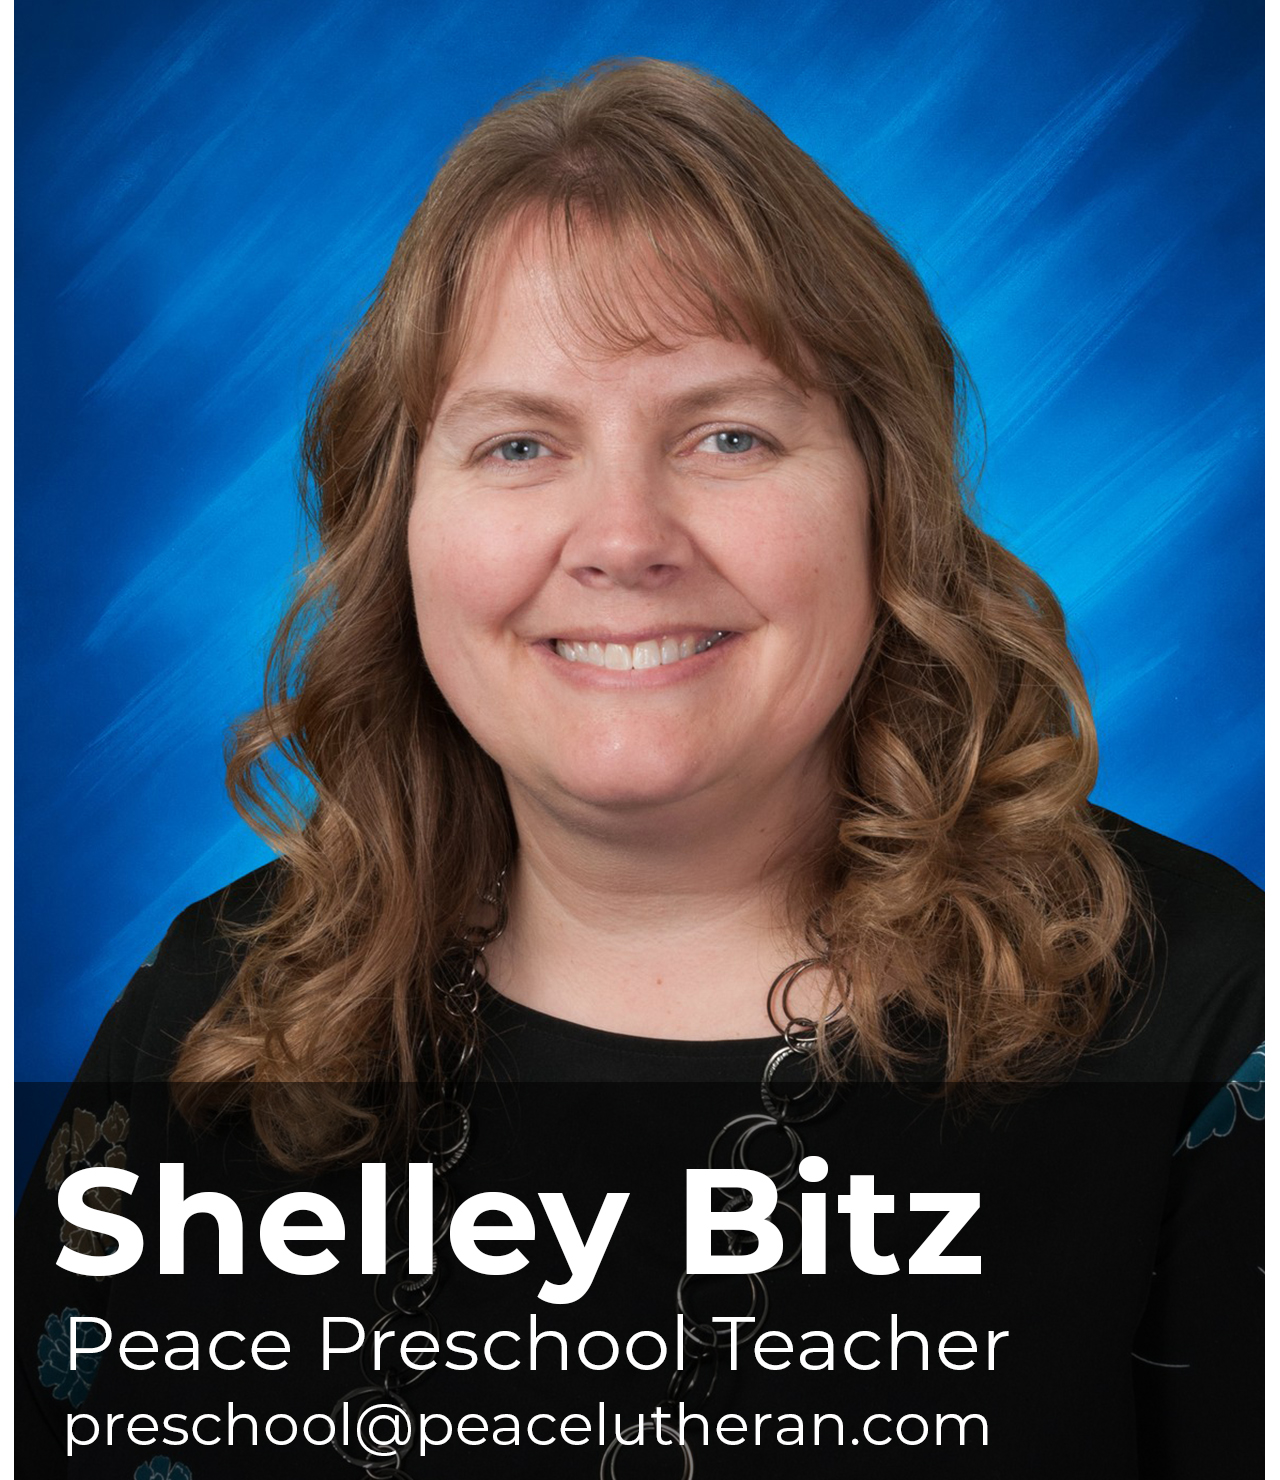 Shelley Bitz